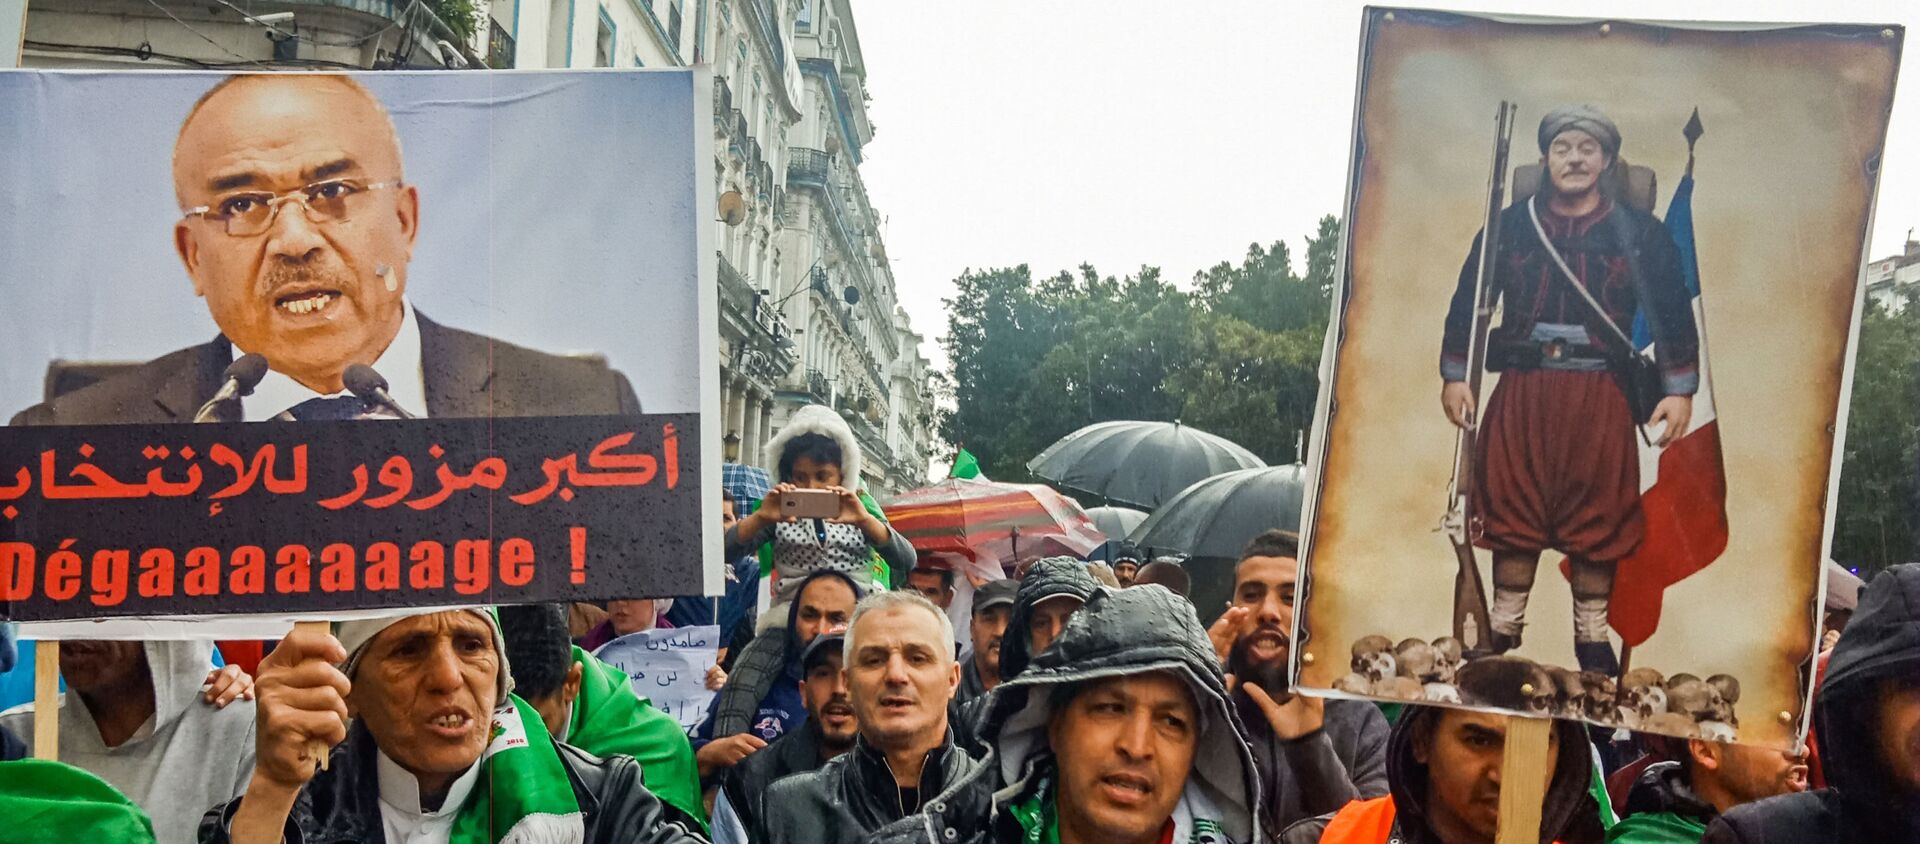 Des Algériens brandissent des pancartes contre l’ancien Premier ministre Ahmed Ouyahia. - Sputnik Afrique, 1920, 06.03.2020